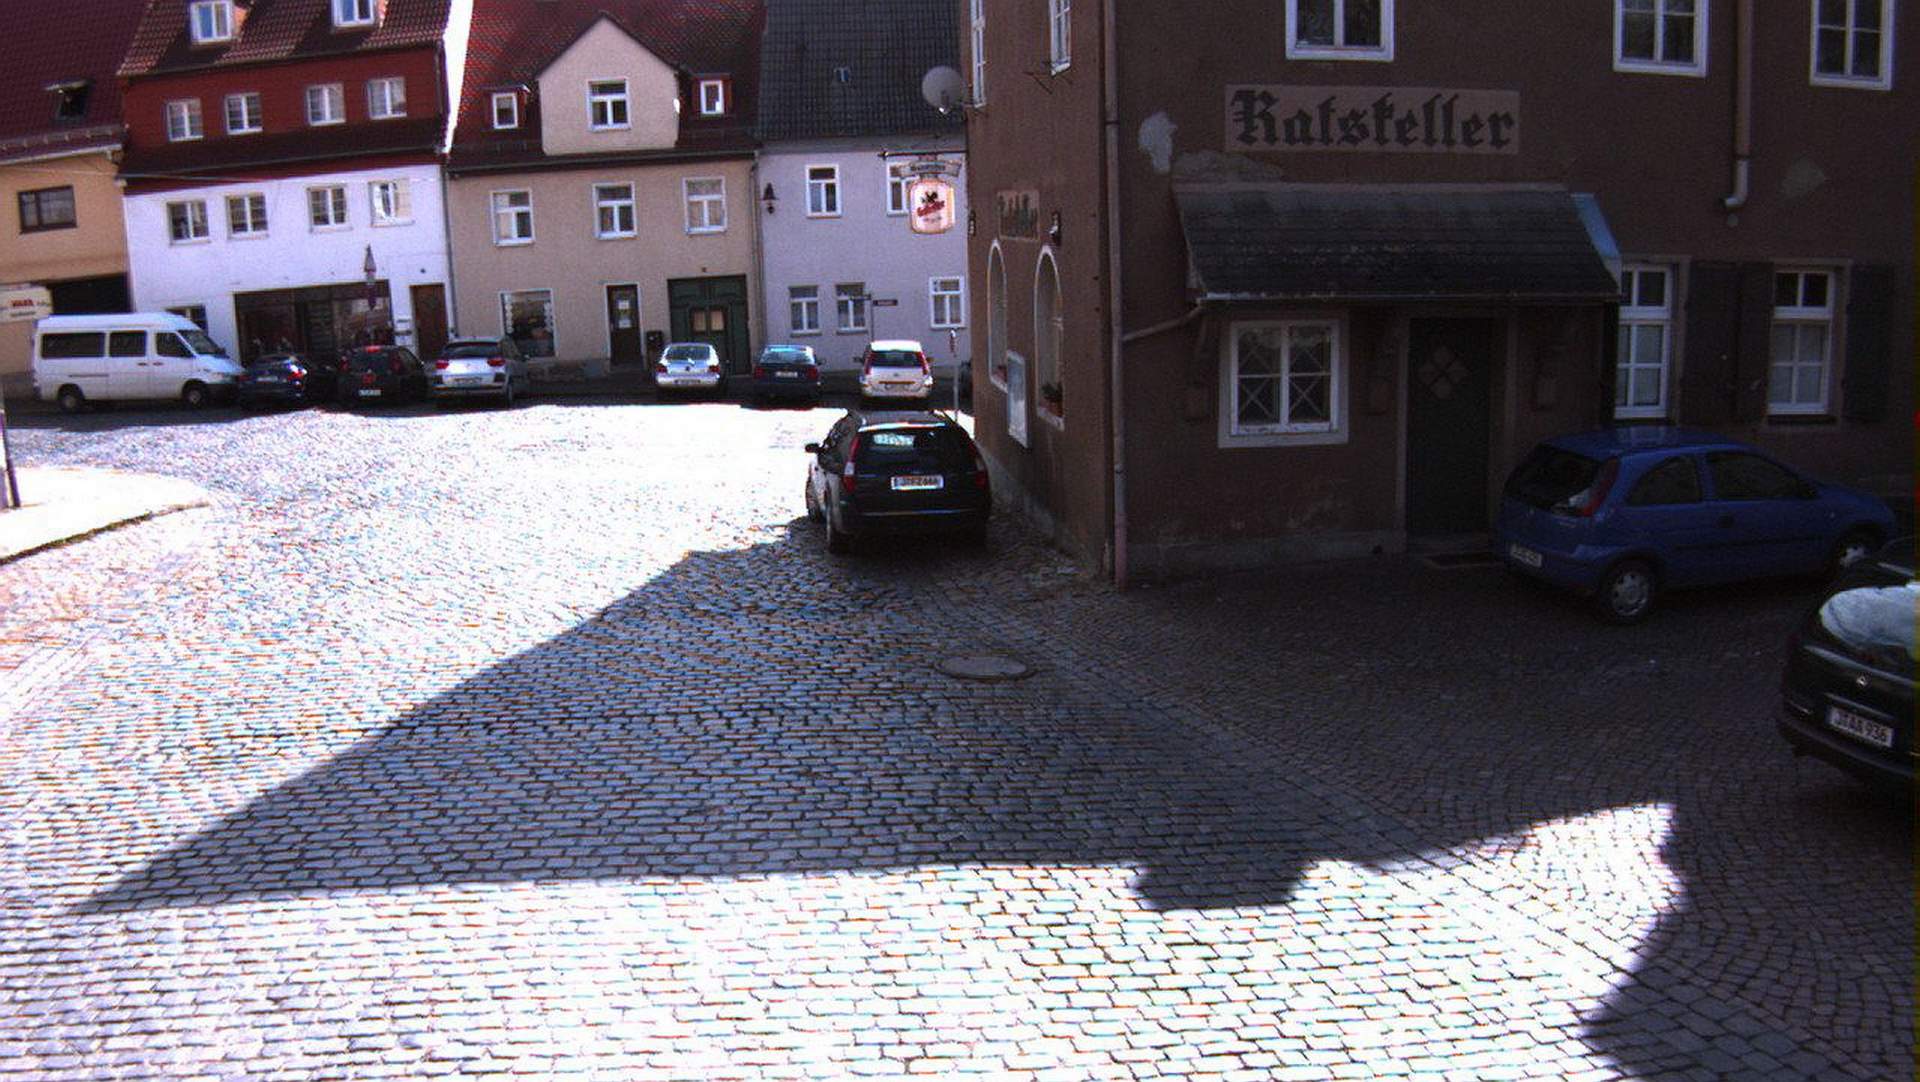 Der Stadthof in Jena Lobeda-Altstadt vor der Baumaßnahme, die Straße ist mit Kopfsteinpflaster ausgelegt. Im Vordergrund ein parkendes Auto.